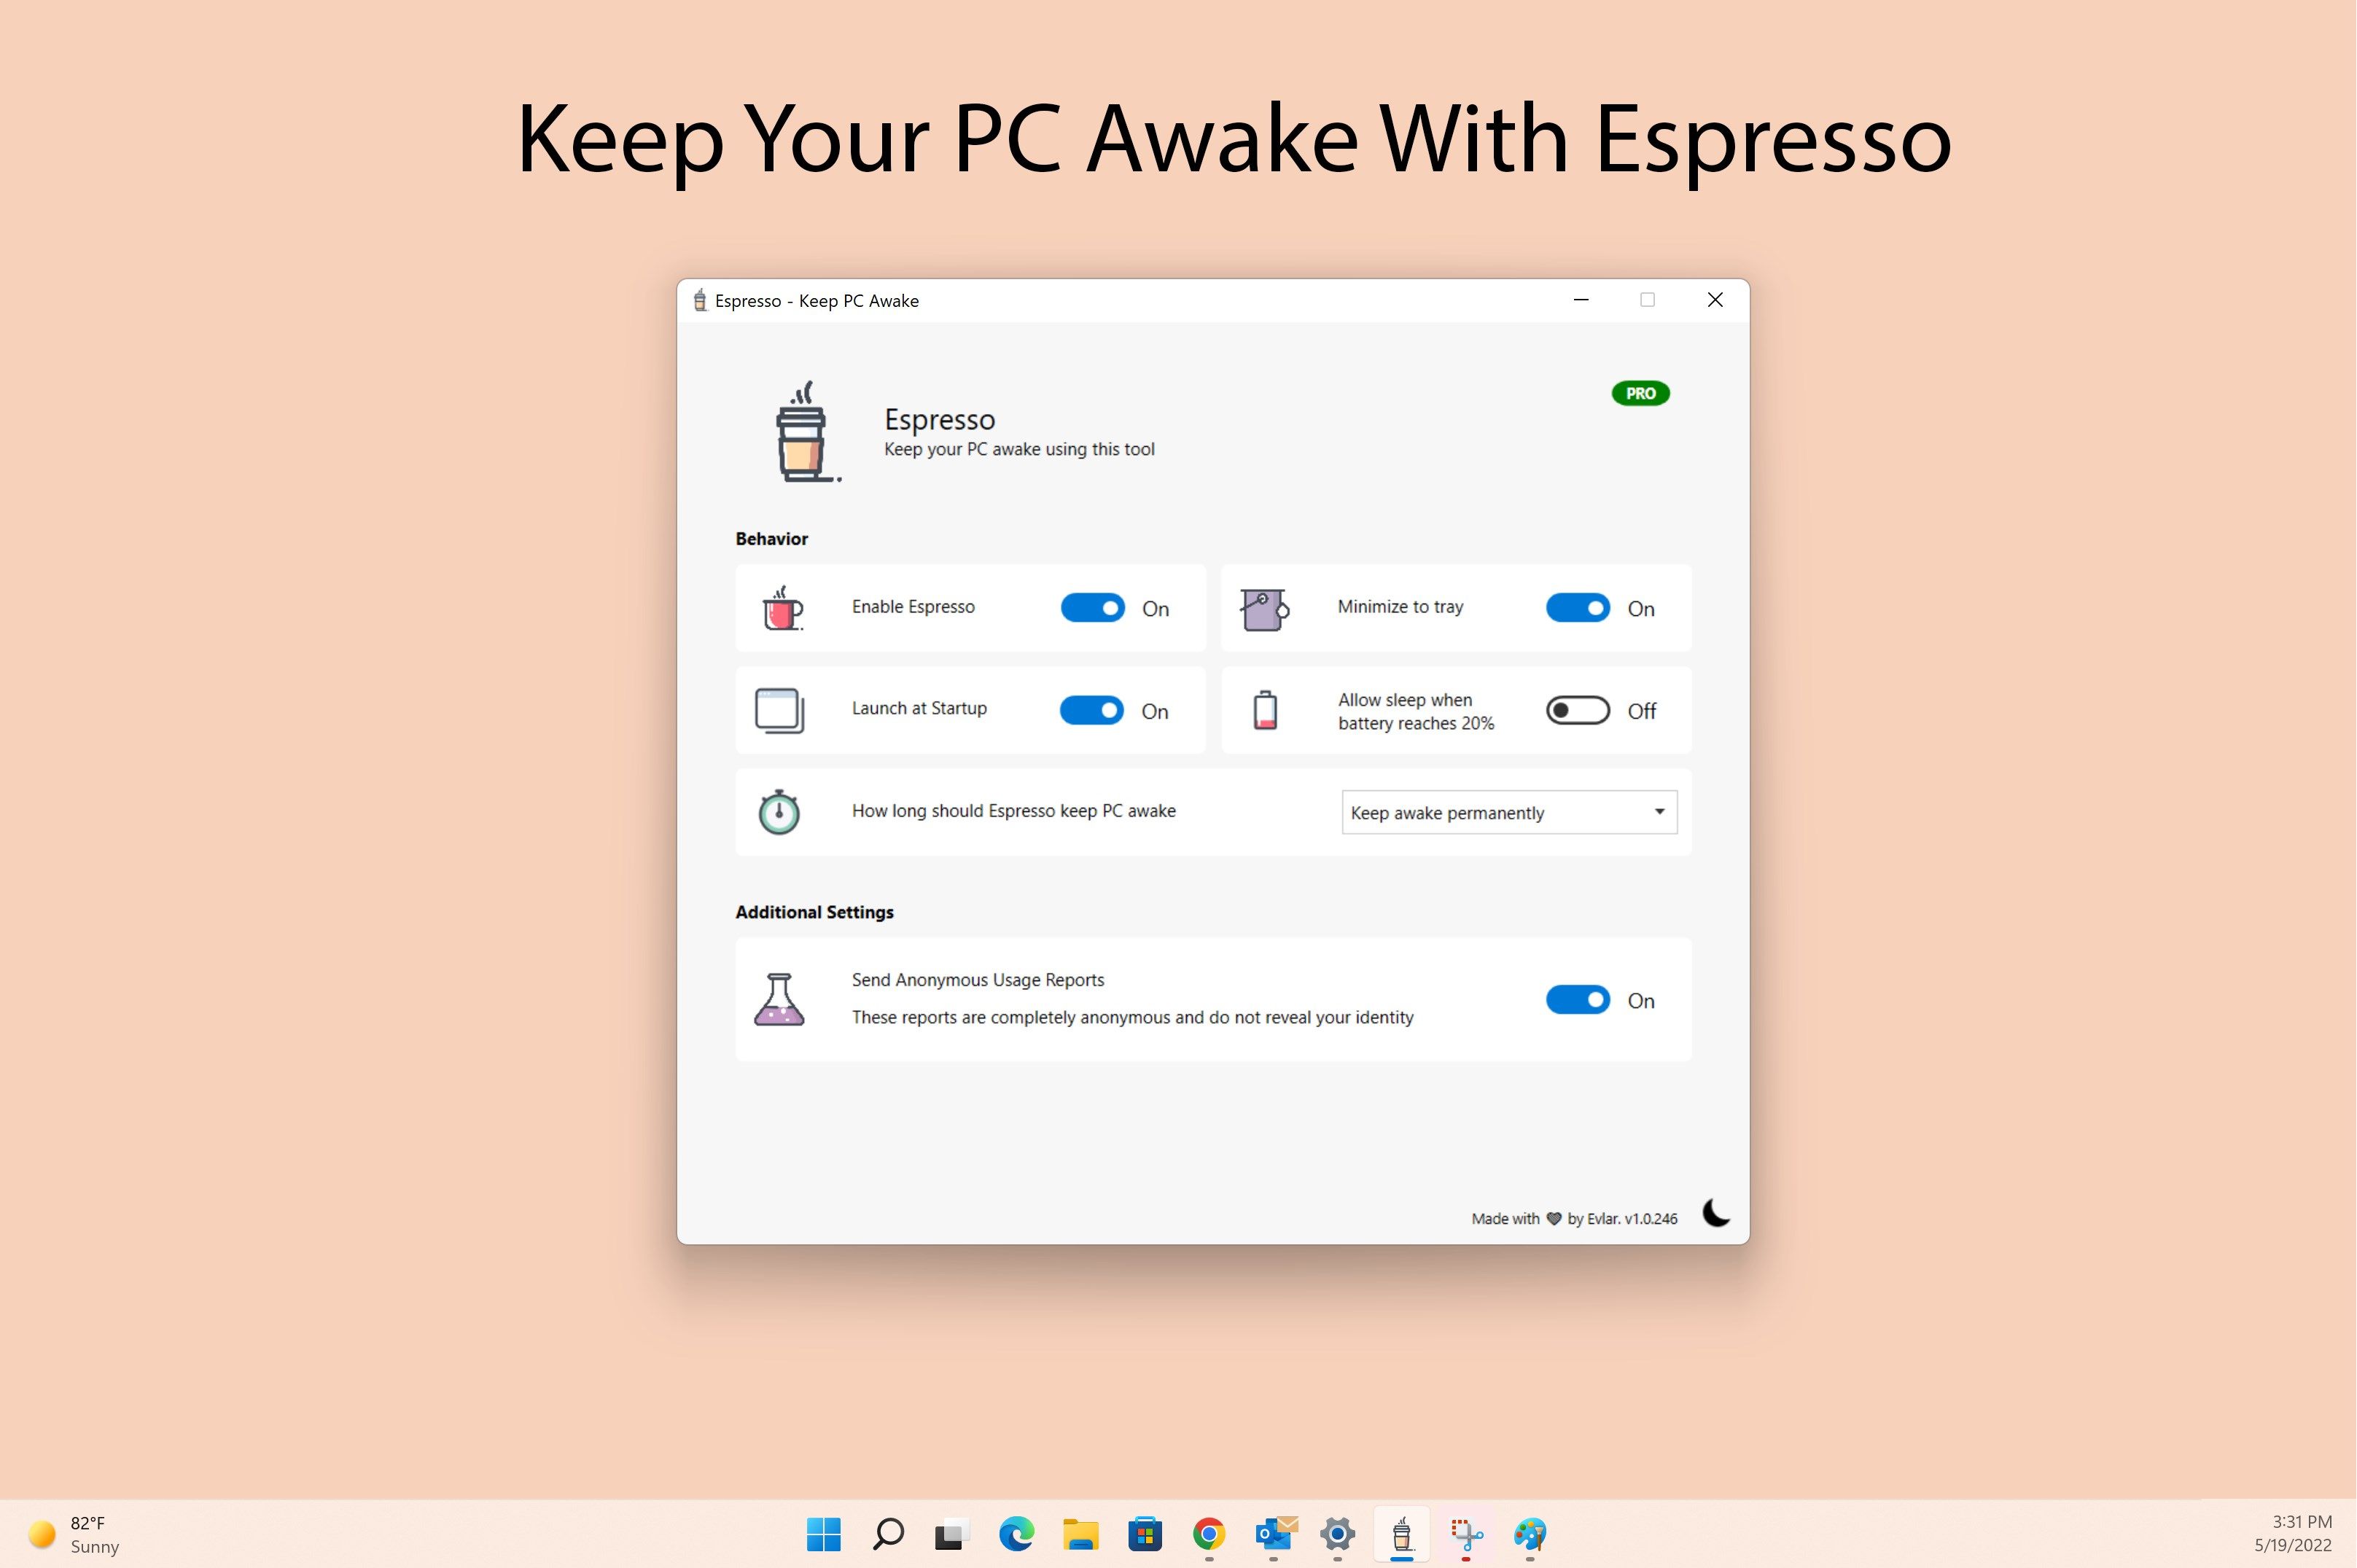 Keep your PC awake with Espresso